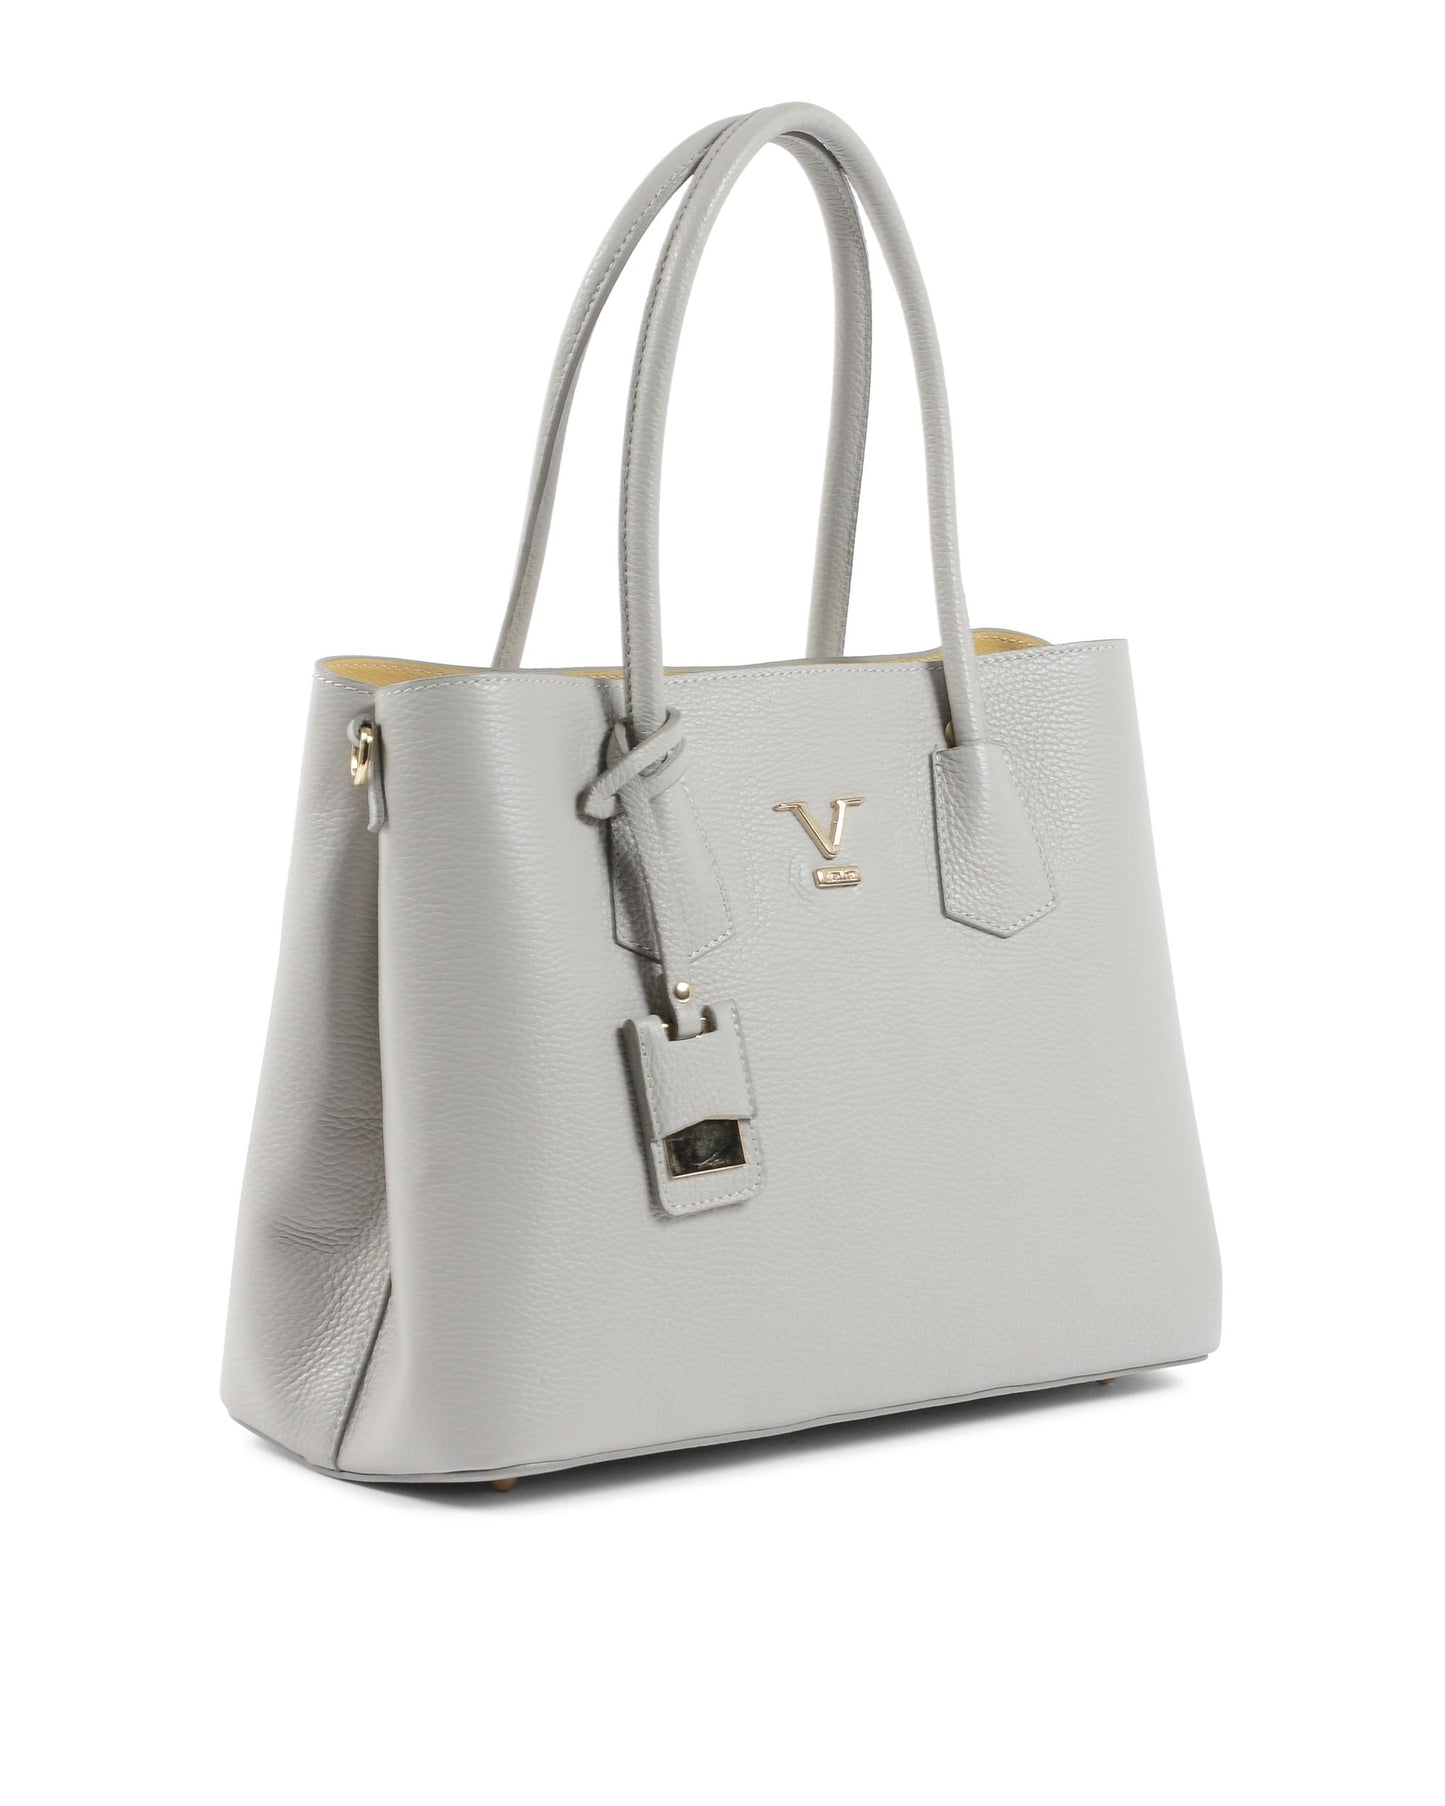 V Italia Womens Handbag Grey 10510 DOLLARO GRIGIO PERLA